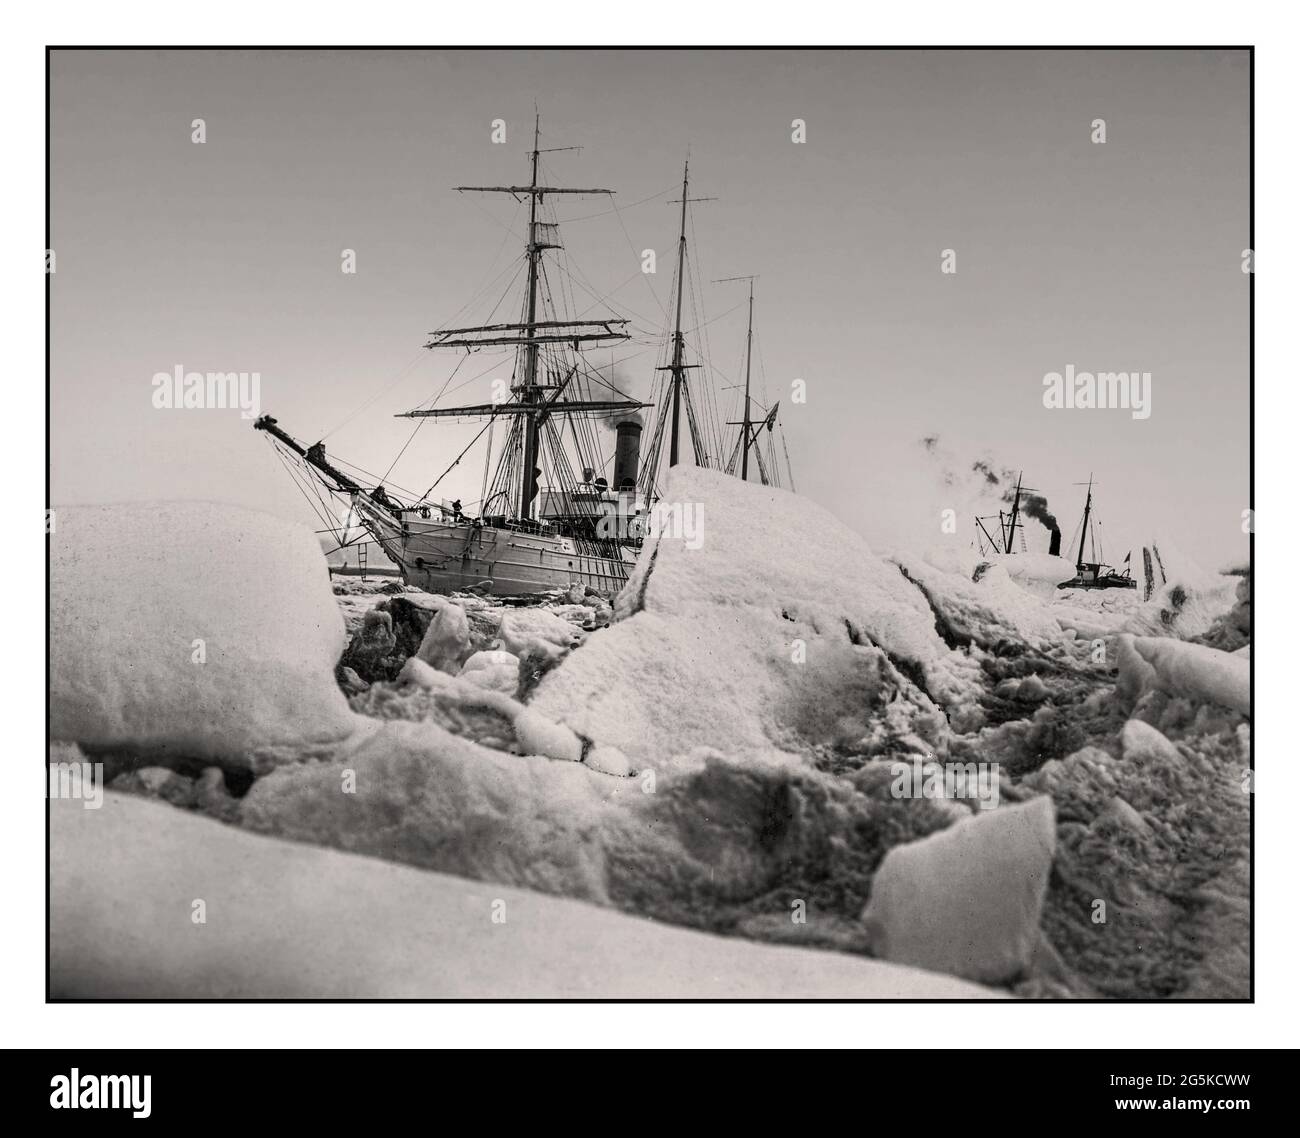 Archivbild 1914 zeigt die U.S.R.C. 'Bear' und S.S. 'Corwin ankerten in einem Eisfeld, umgeben von kleinen Eisbergen. [Zwischen ca. 1900 und 1927] - Bär (Schiff) - Corwin (Schiff) - Schiffe--Alaska--Nome--1890-1930 - Eisberge--Alaska--Nome--1890-1930 - Vereinigte Staaten--Alaska--Nome Headings Photographic Prints--1890-1930. Stockfoto